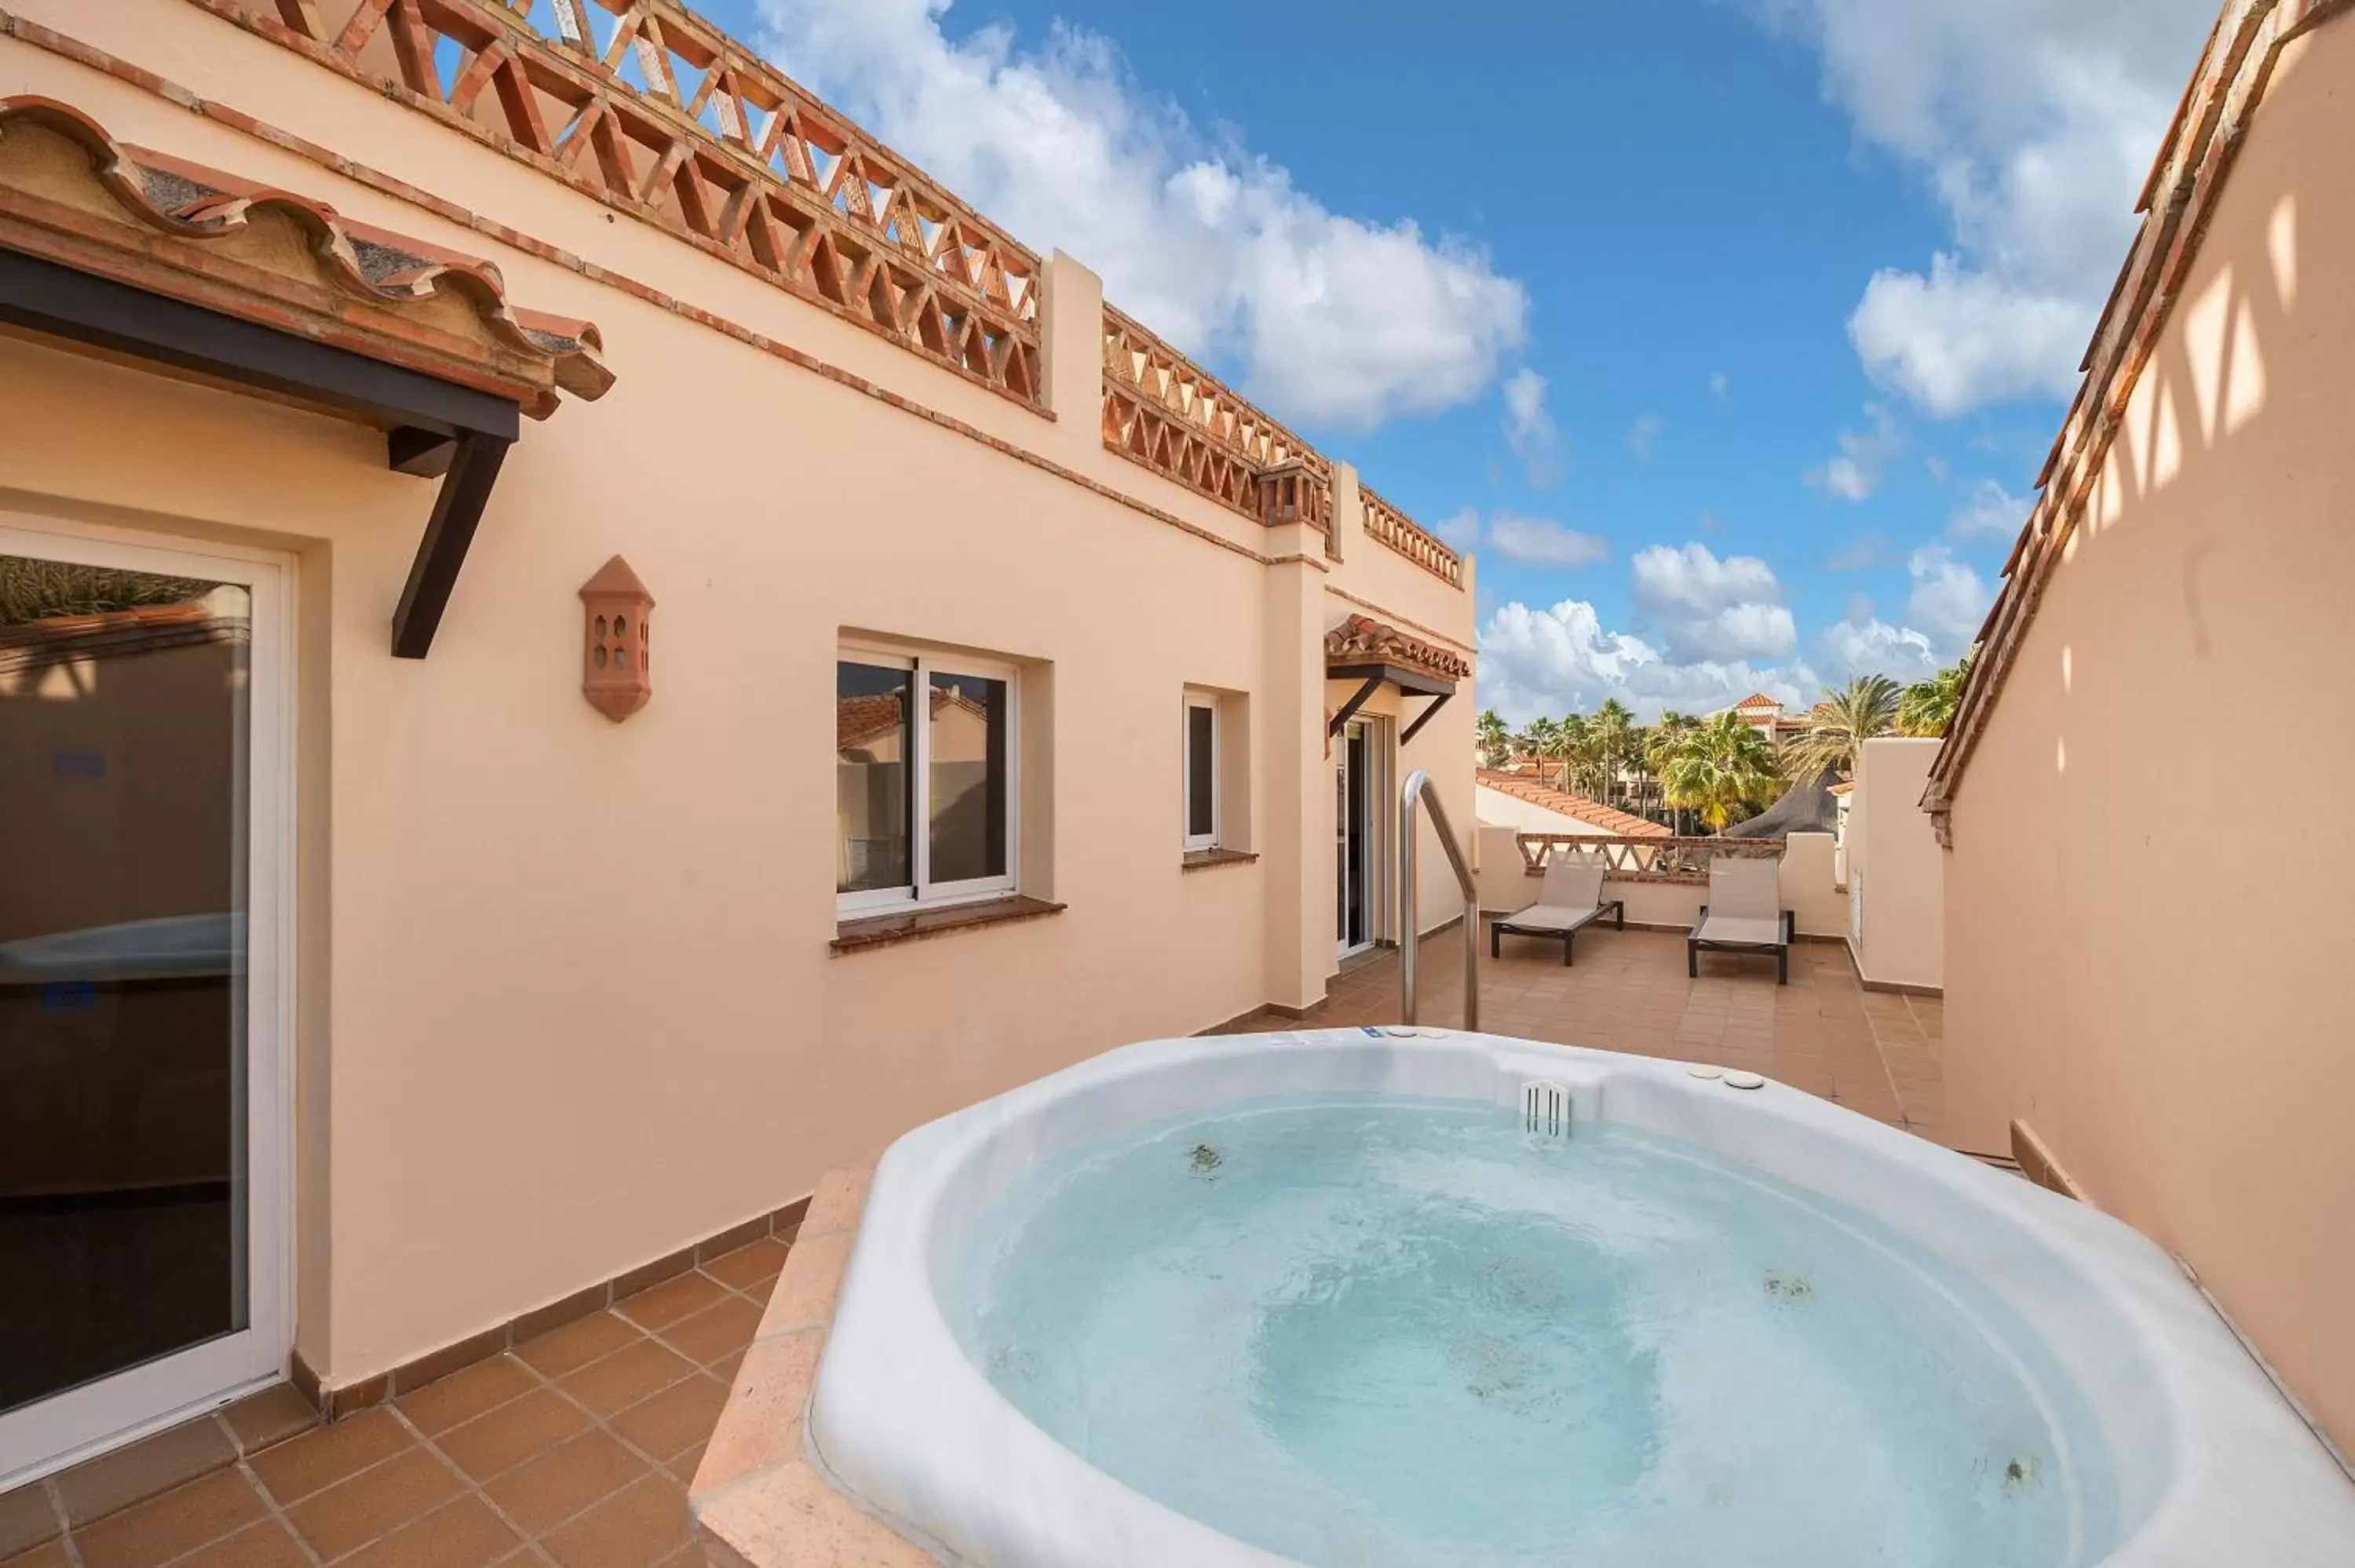 Hot Tub in Wyndham Grand Residences Costa del Sol